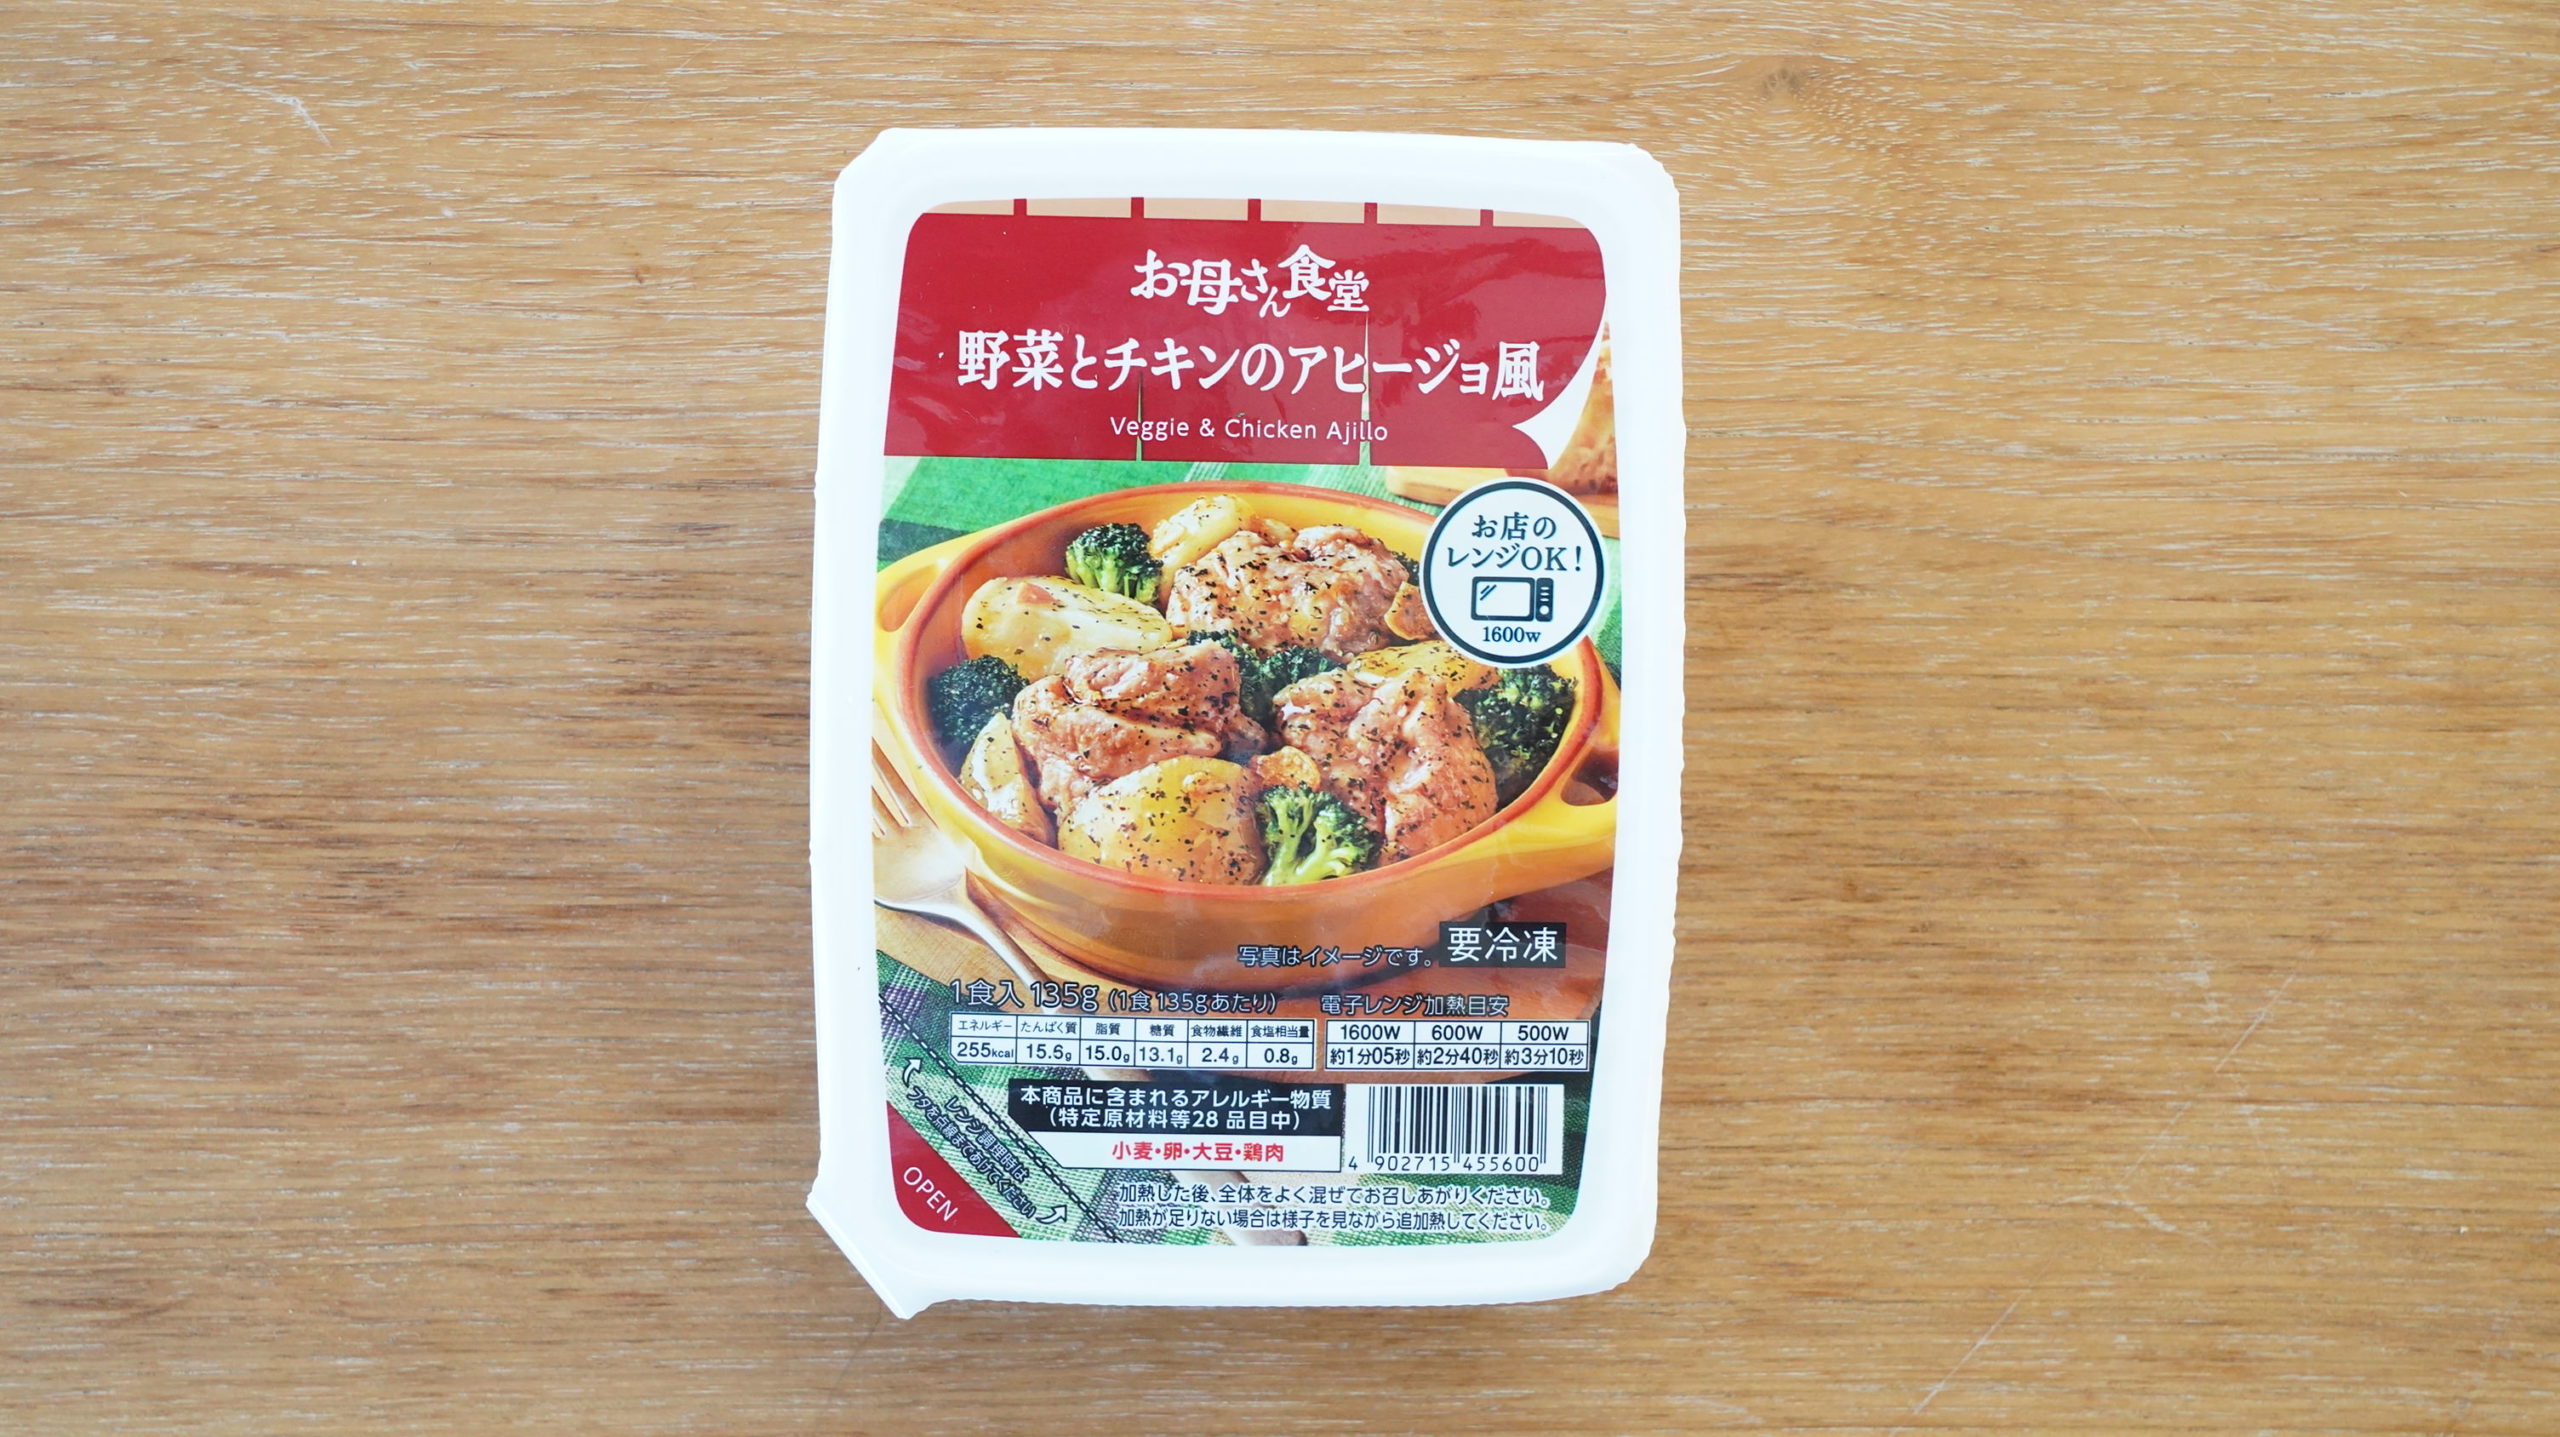 ファミリーマートの冷凍食品「野菜とチキンのアヒージョ風」のパッケージ写真